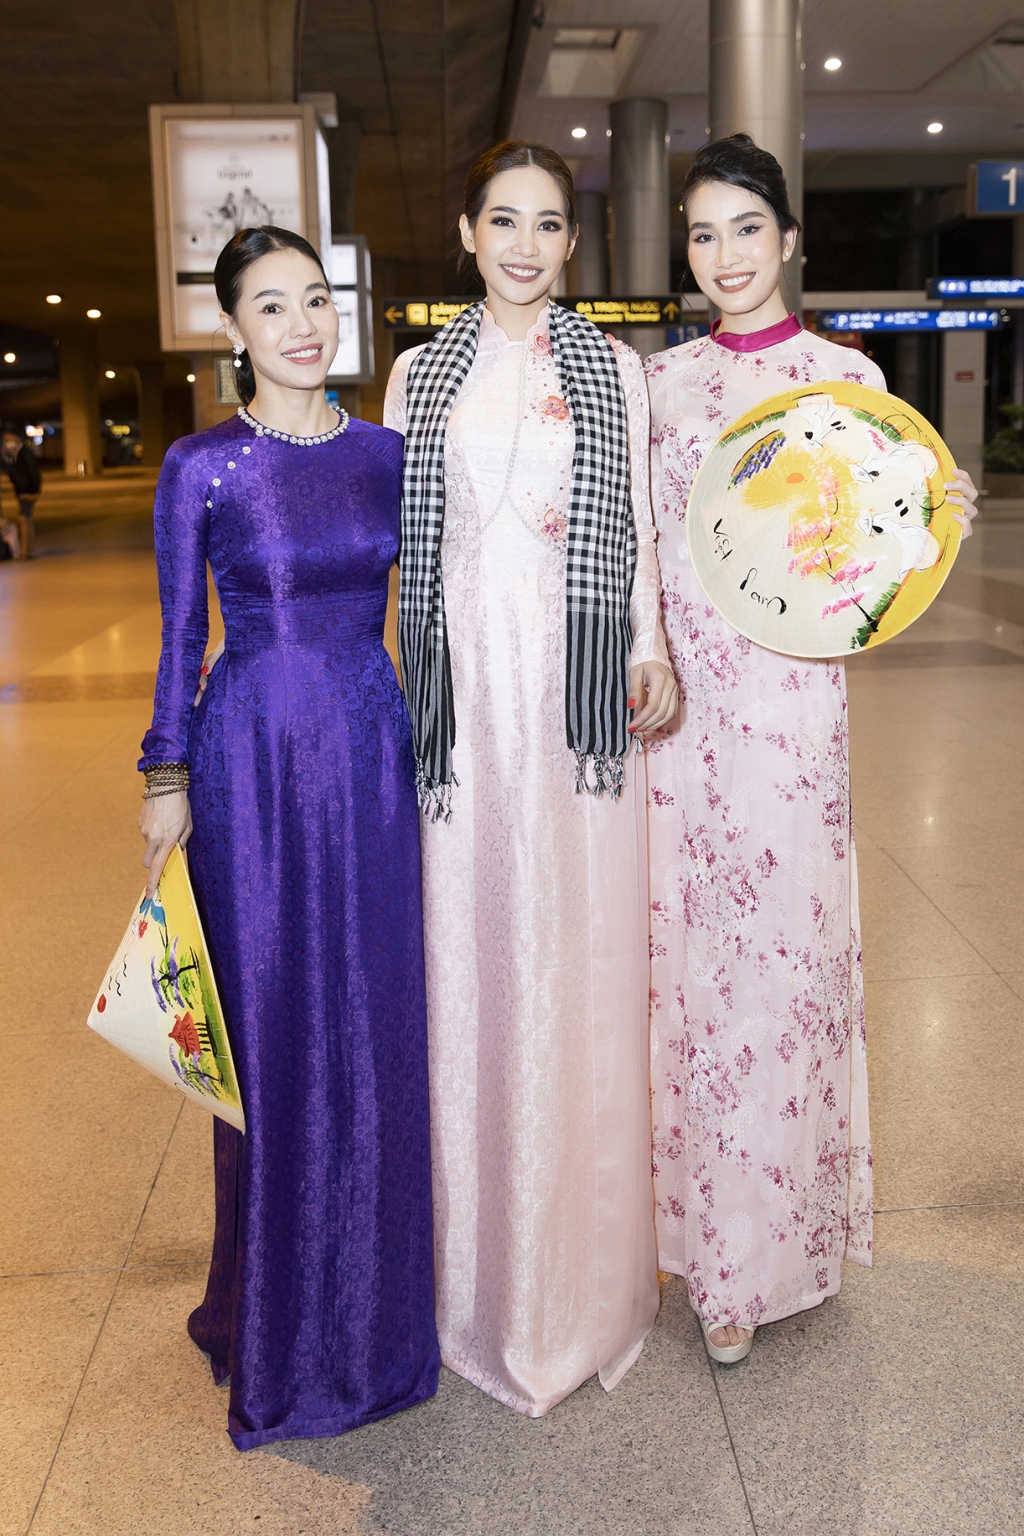 Á hậu Phương Anh tặng áo dài cho Miss International - Hoa hậu Quốc tế 2019 khi vừa đến Việt Nam